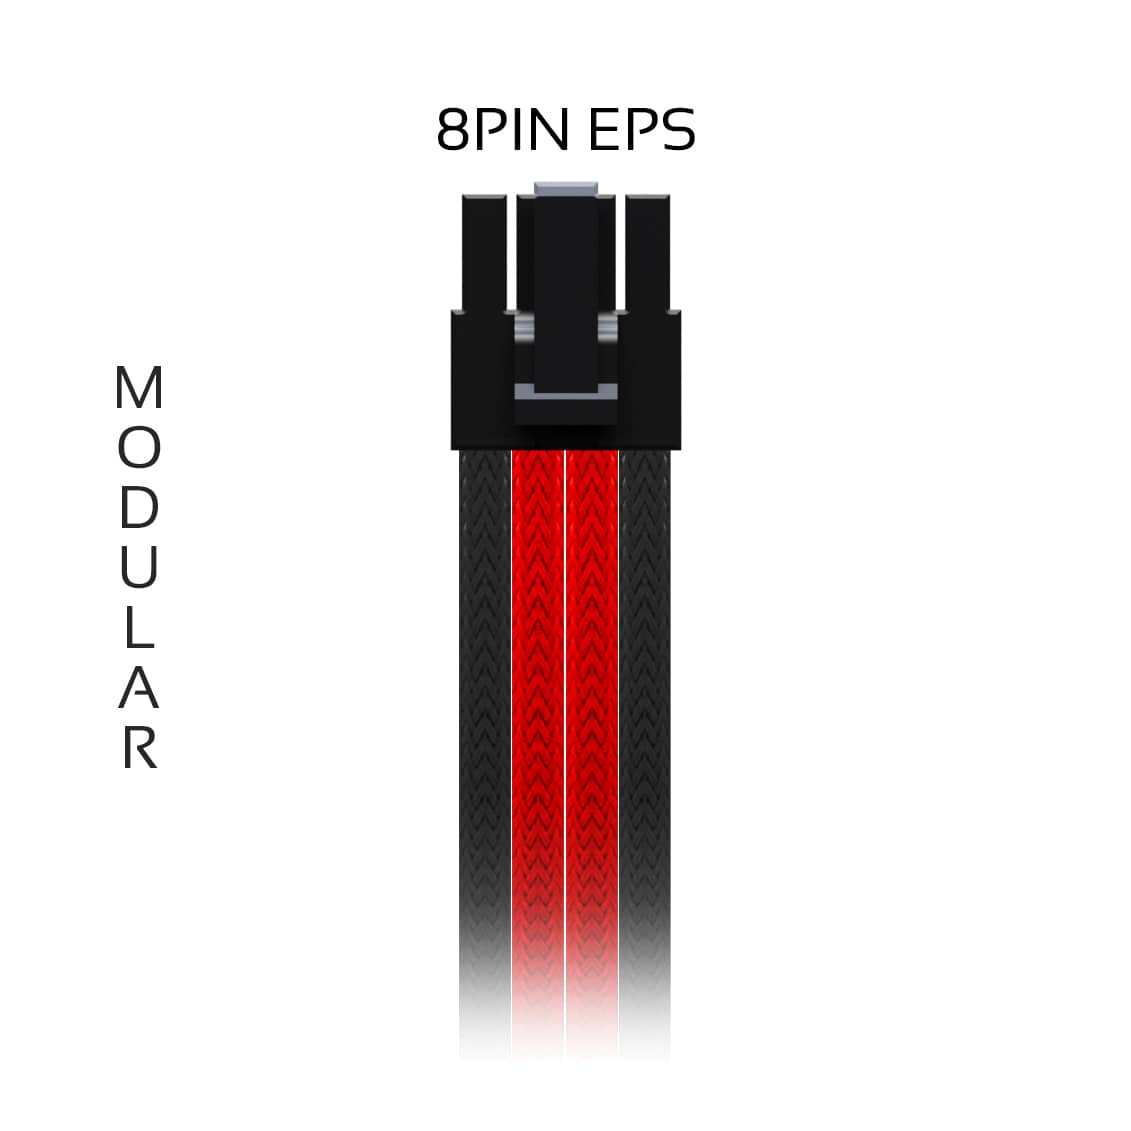 8pin-eps-modular